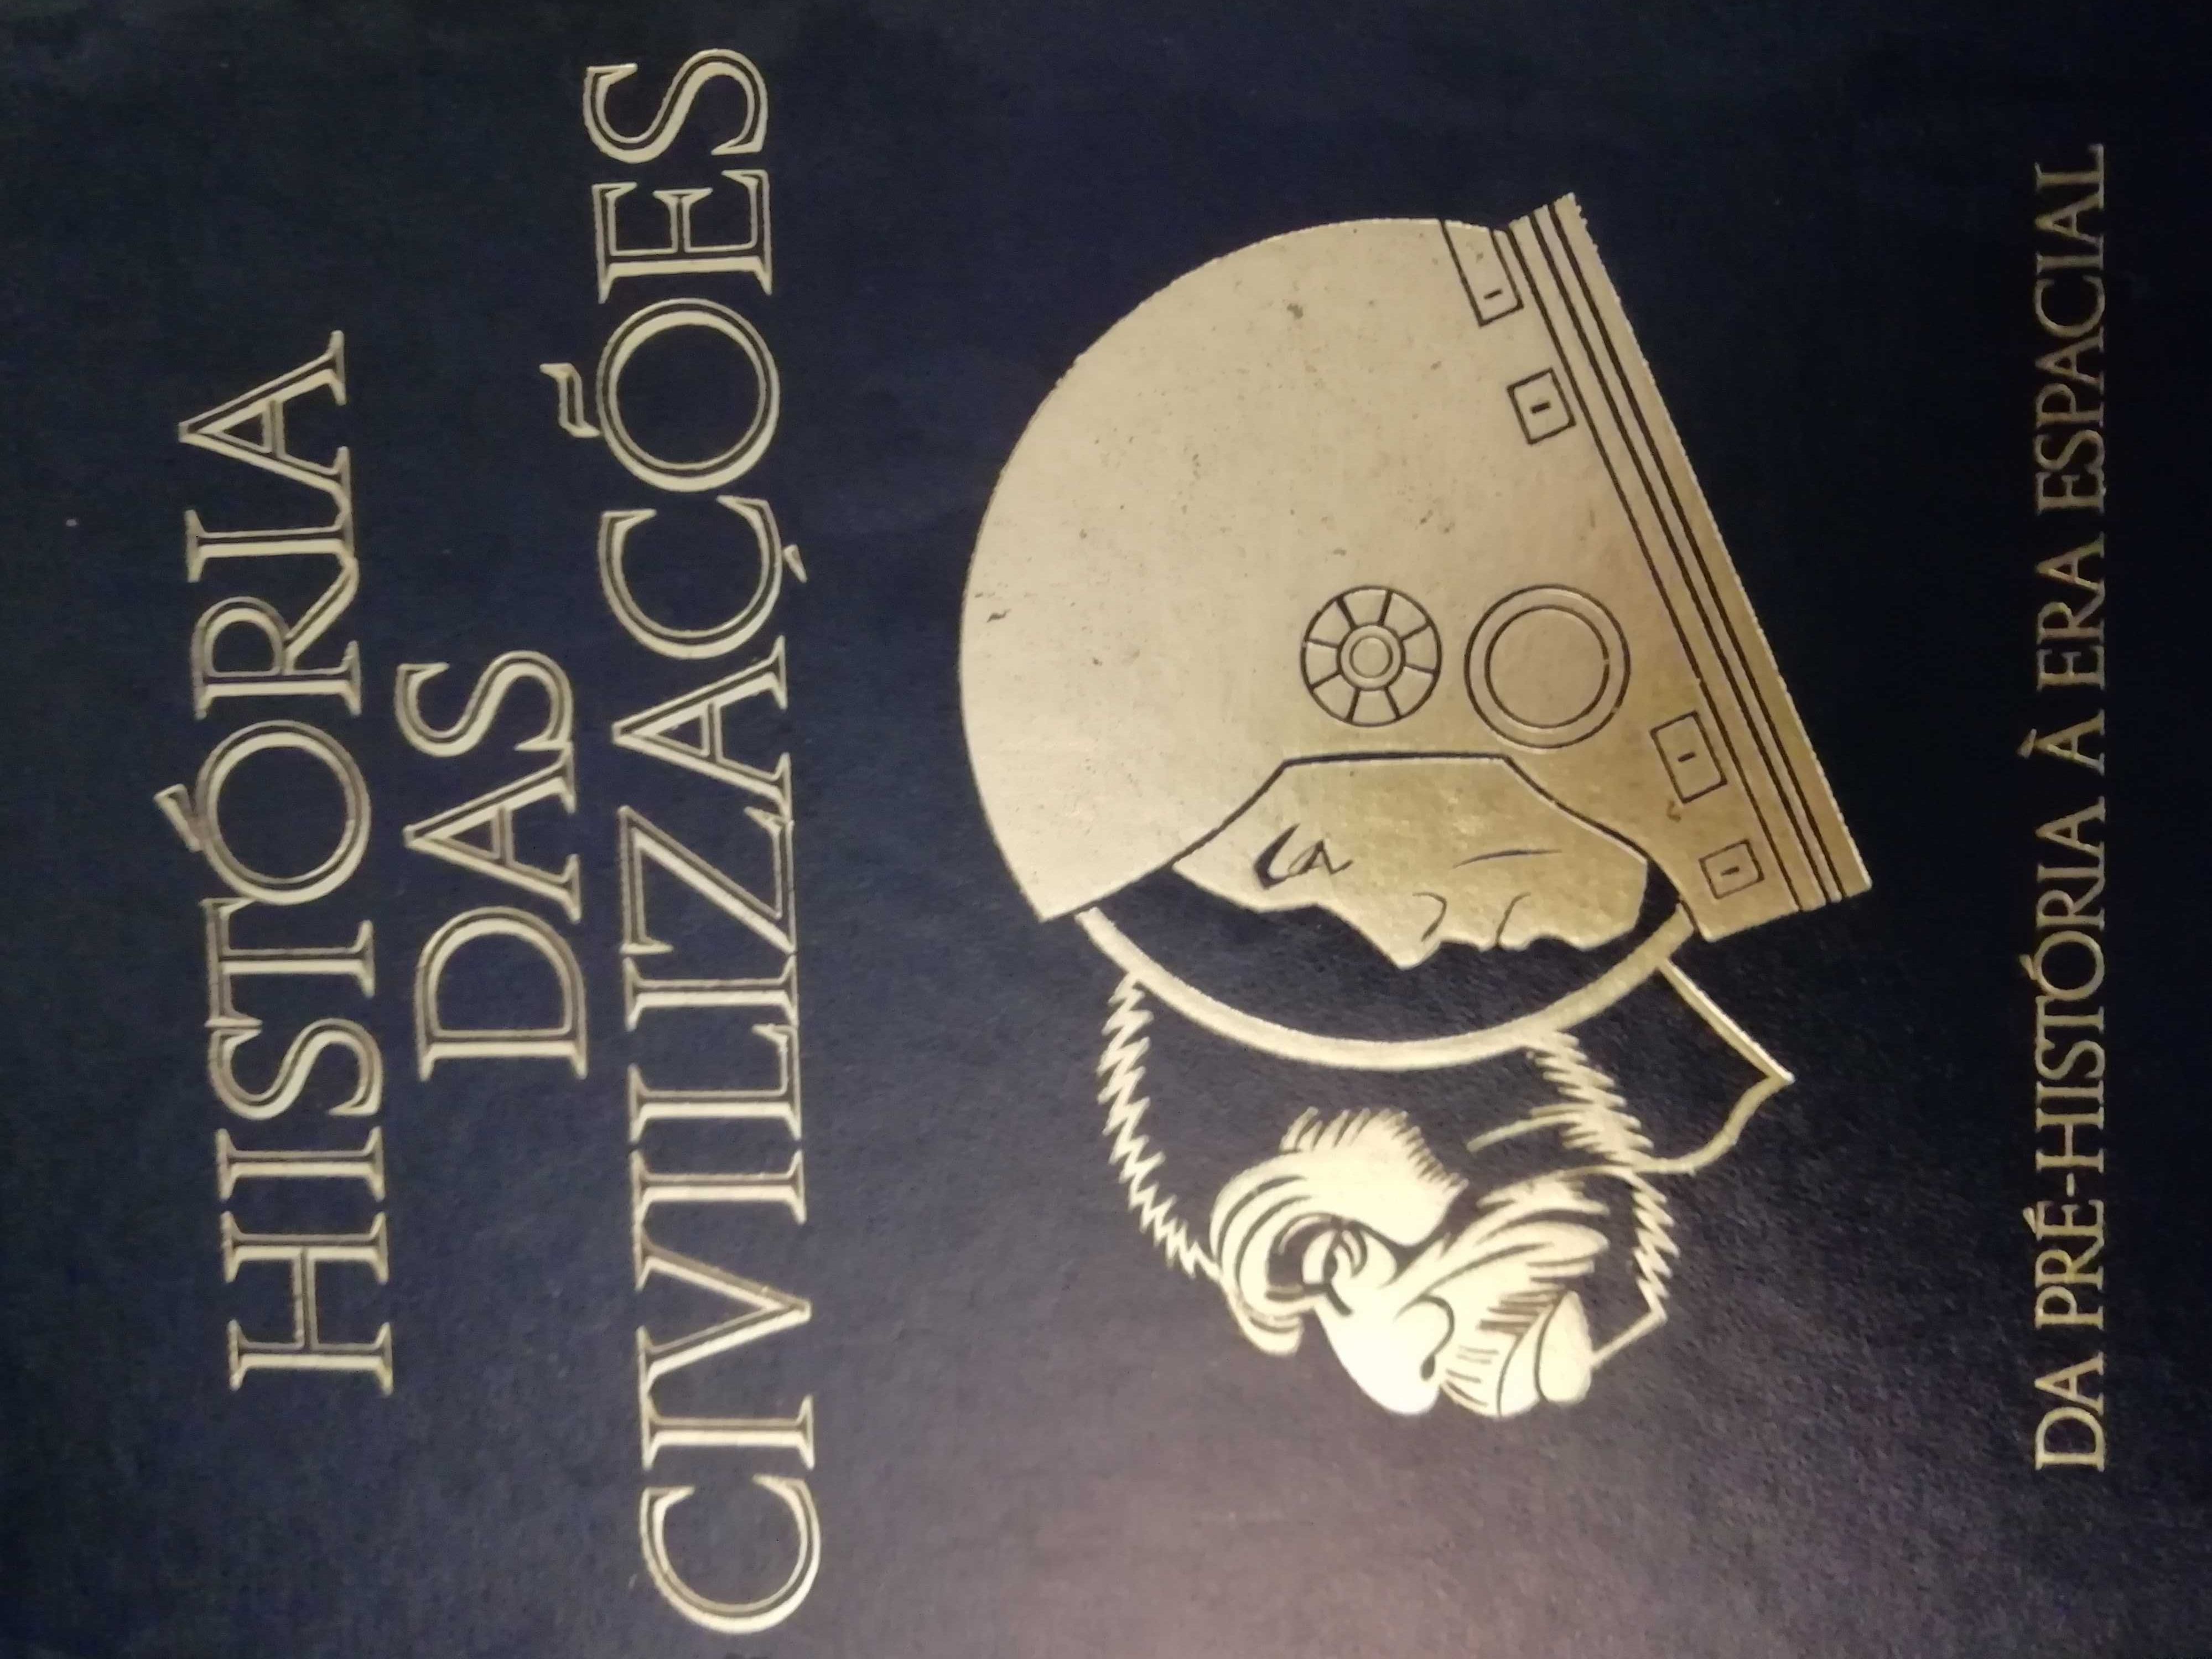 História das Civilizações - Editorial Presença - 5 Volumes (1979)